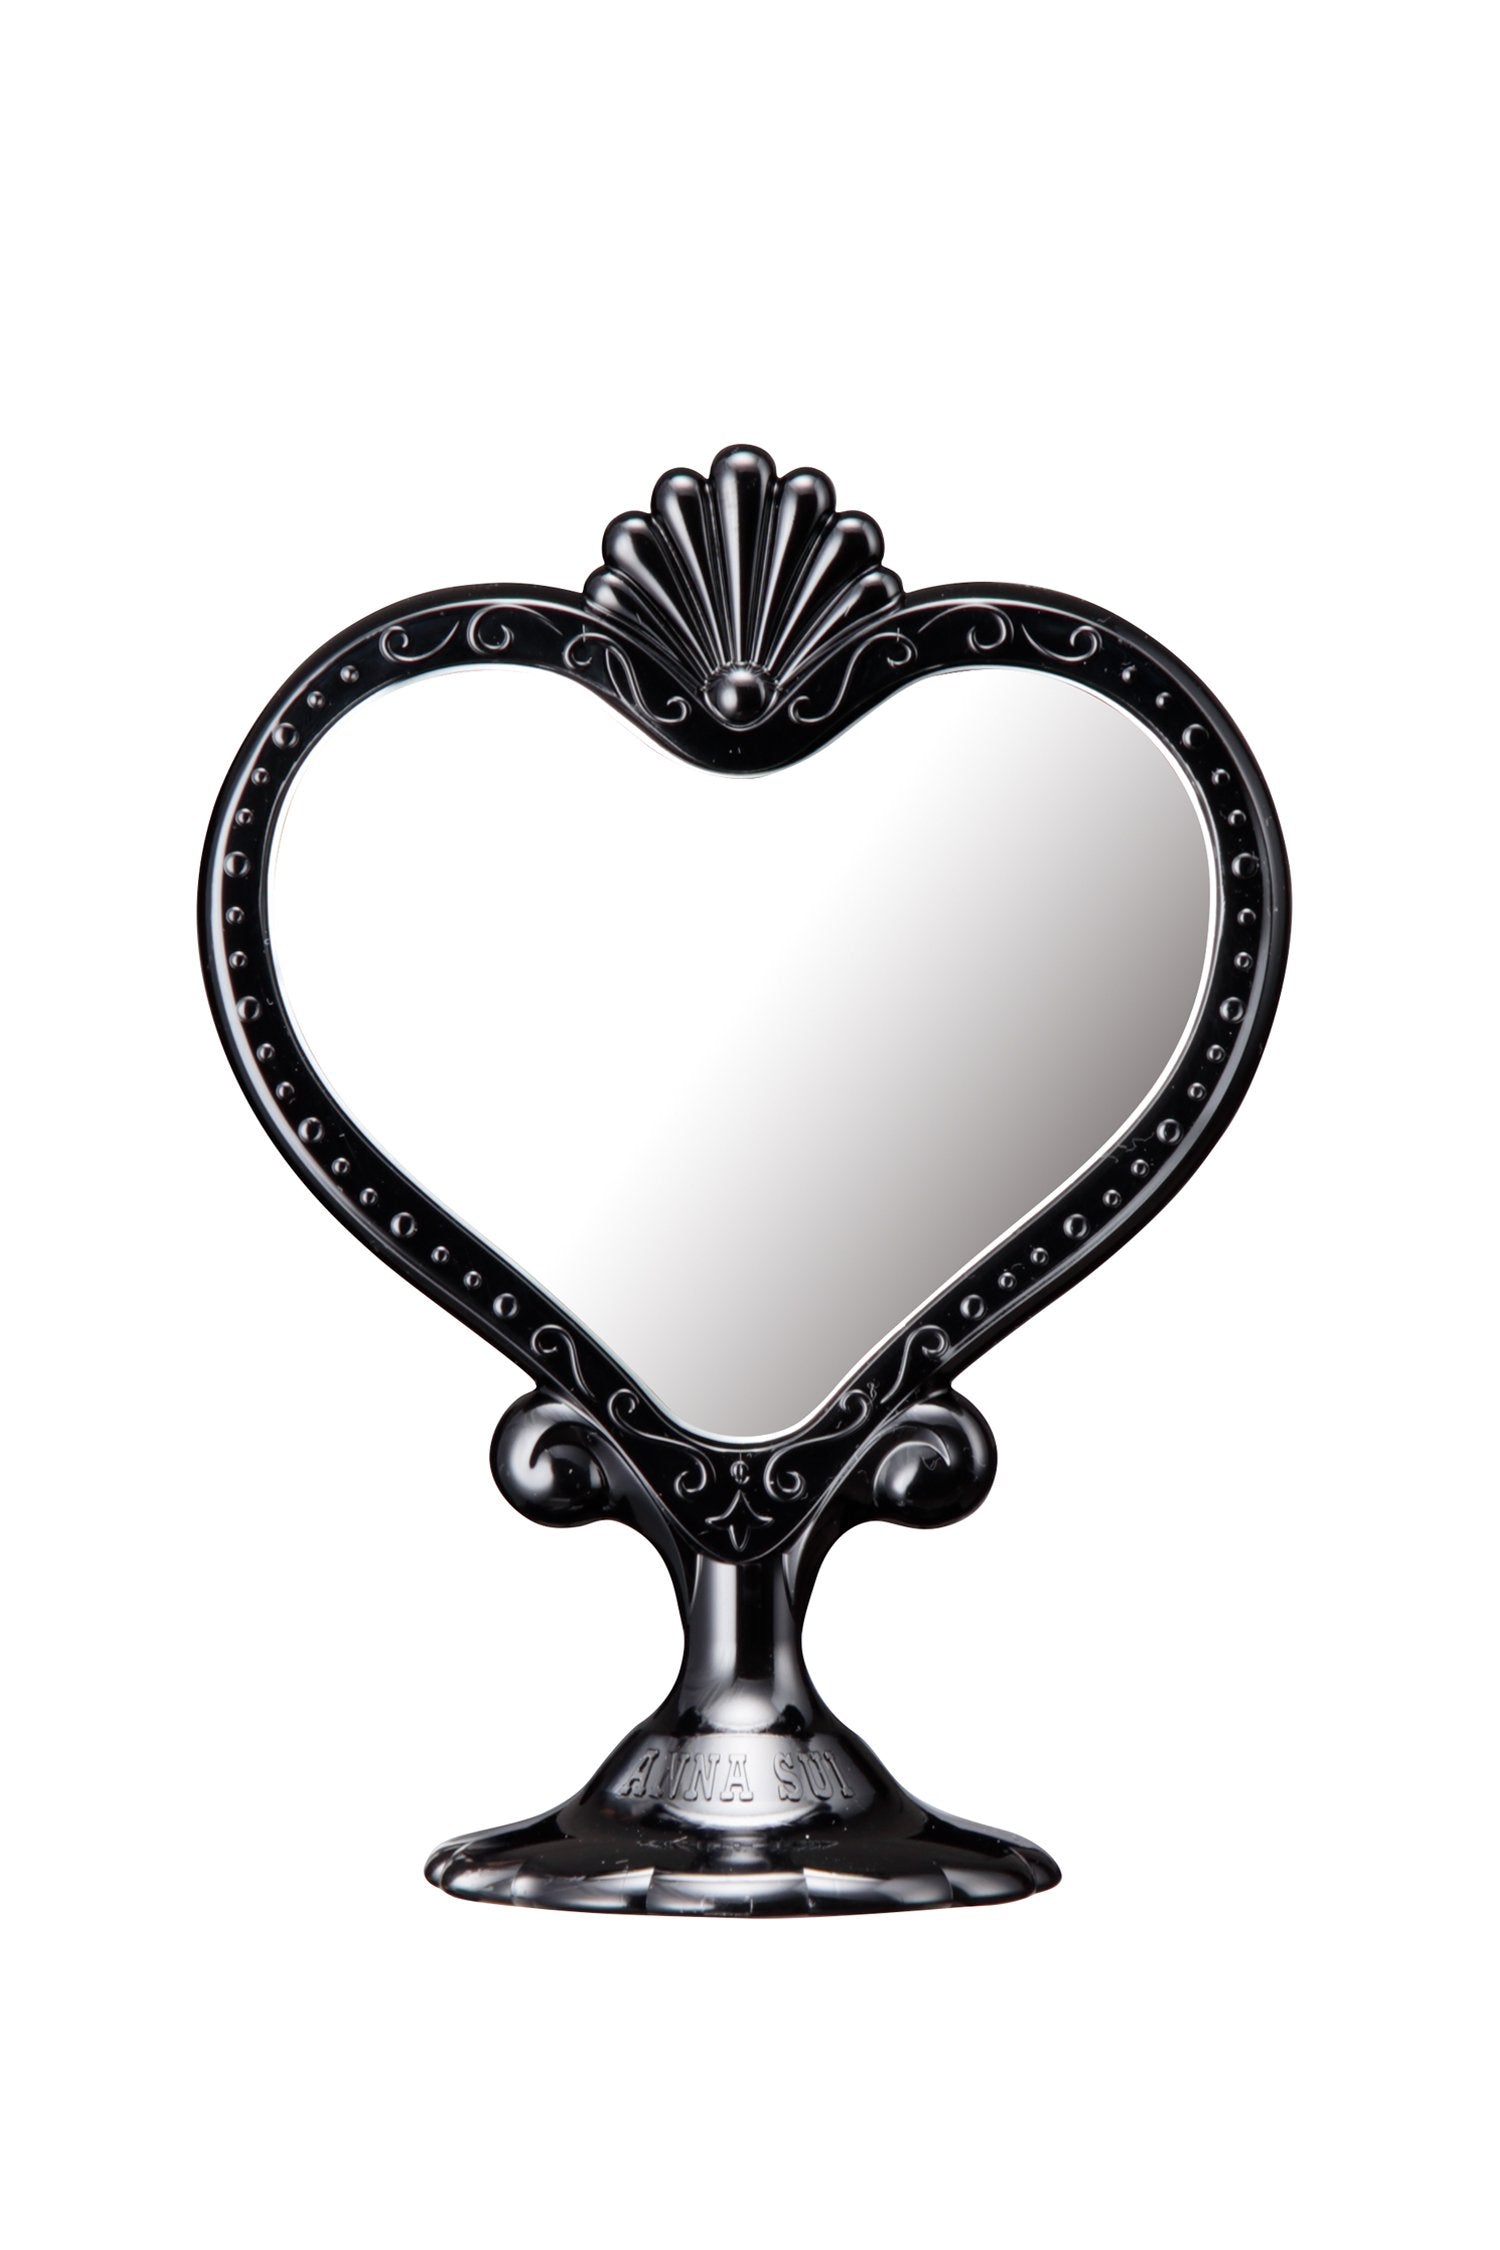 Miroir noir sur pied dans un miroir en forme de cœur, sur un pied avec la marque Anna